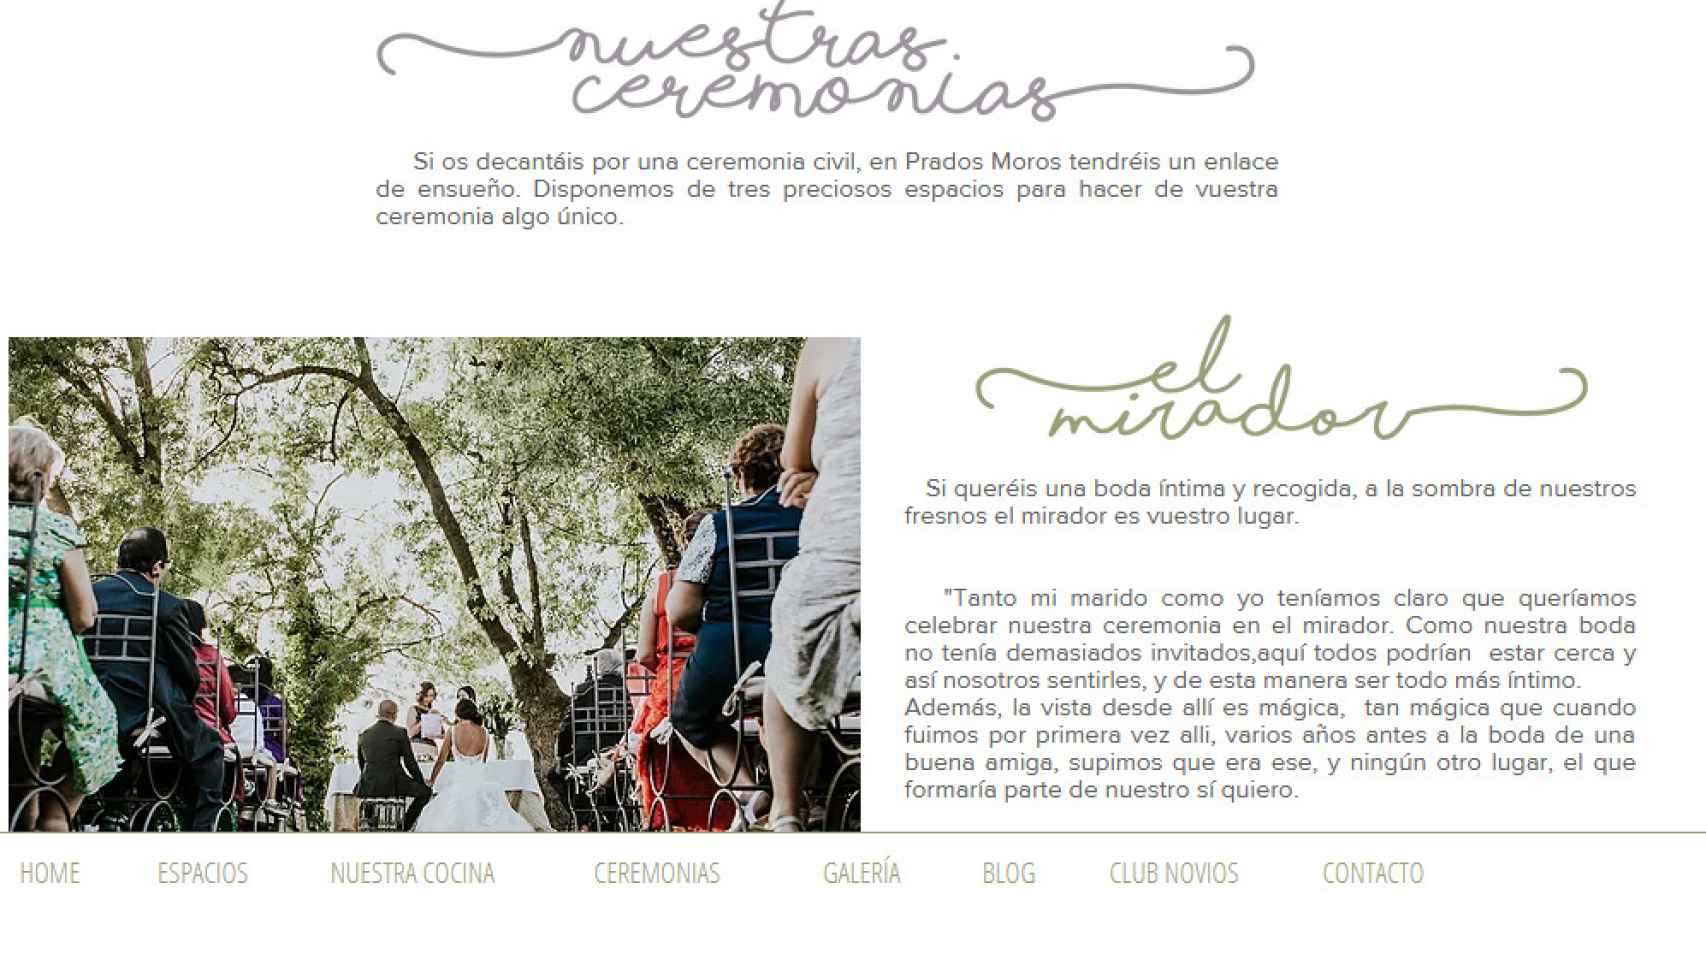 Página web de Prados Moros, en la que publicitan ceremonias a pesar de carecer del permiso.